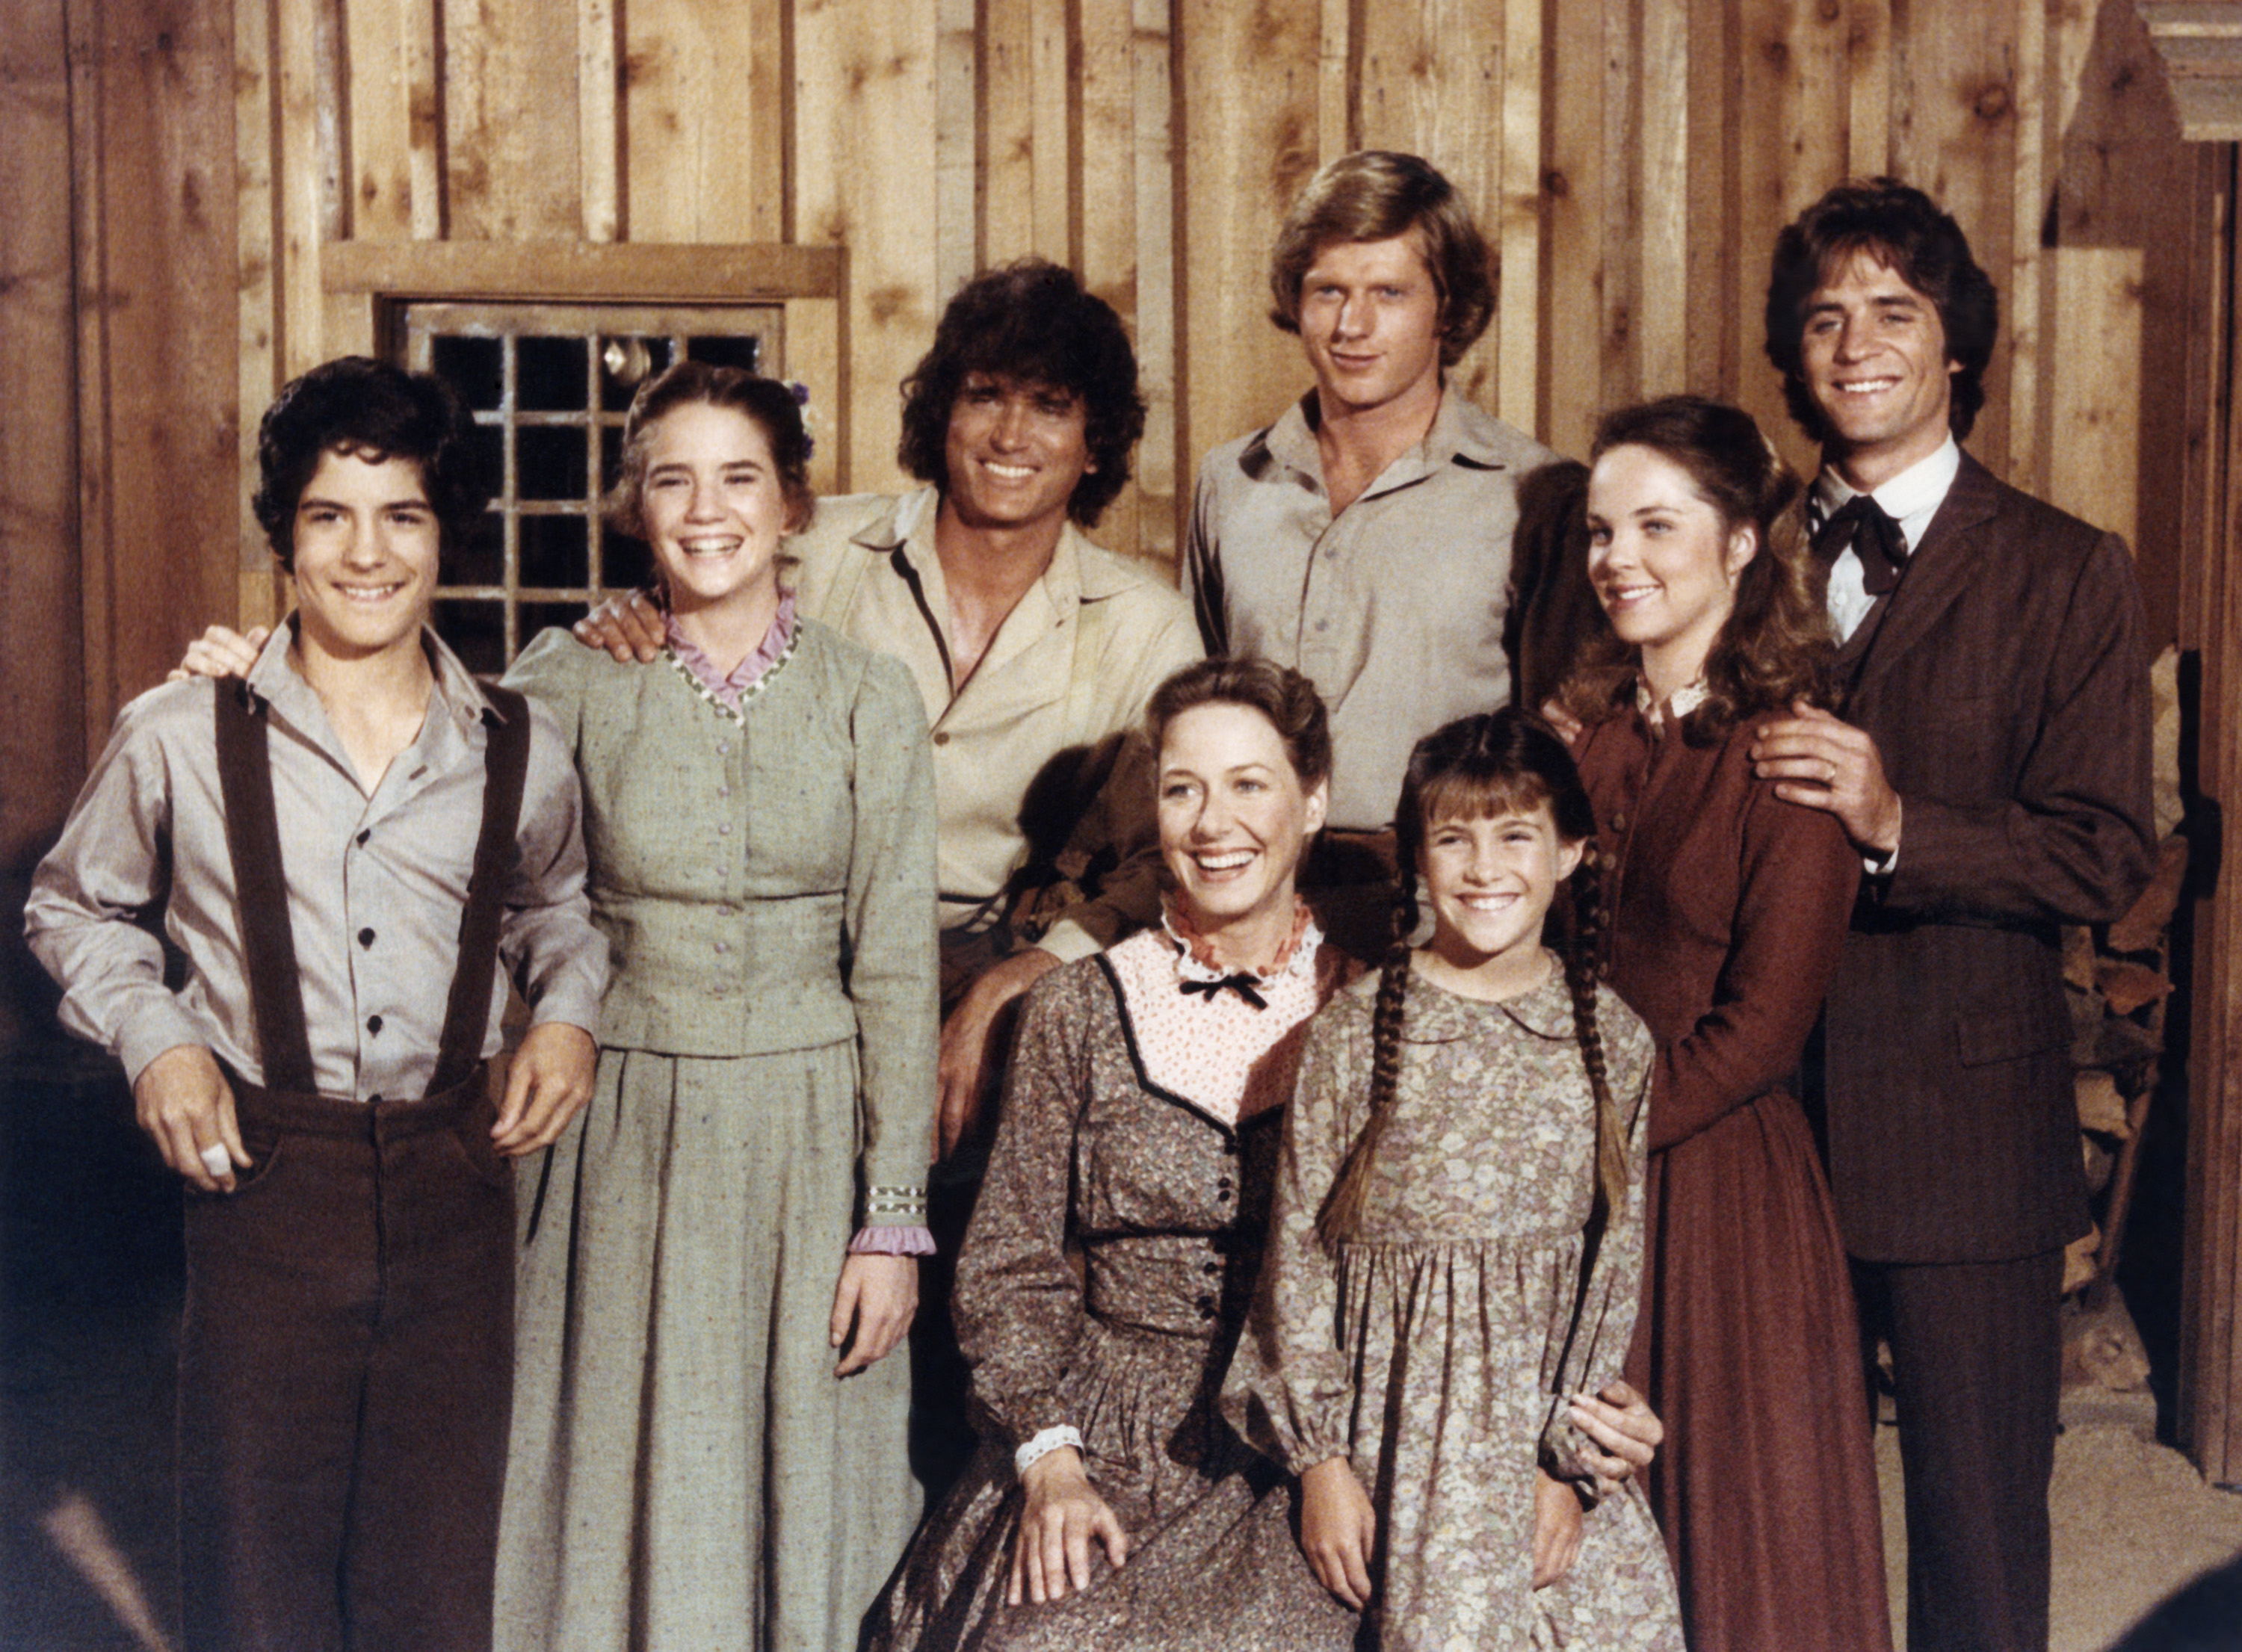 The cast of 'Little House on the Prairie' Season 7